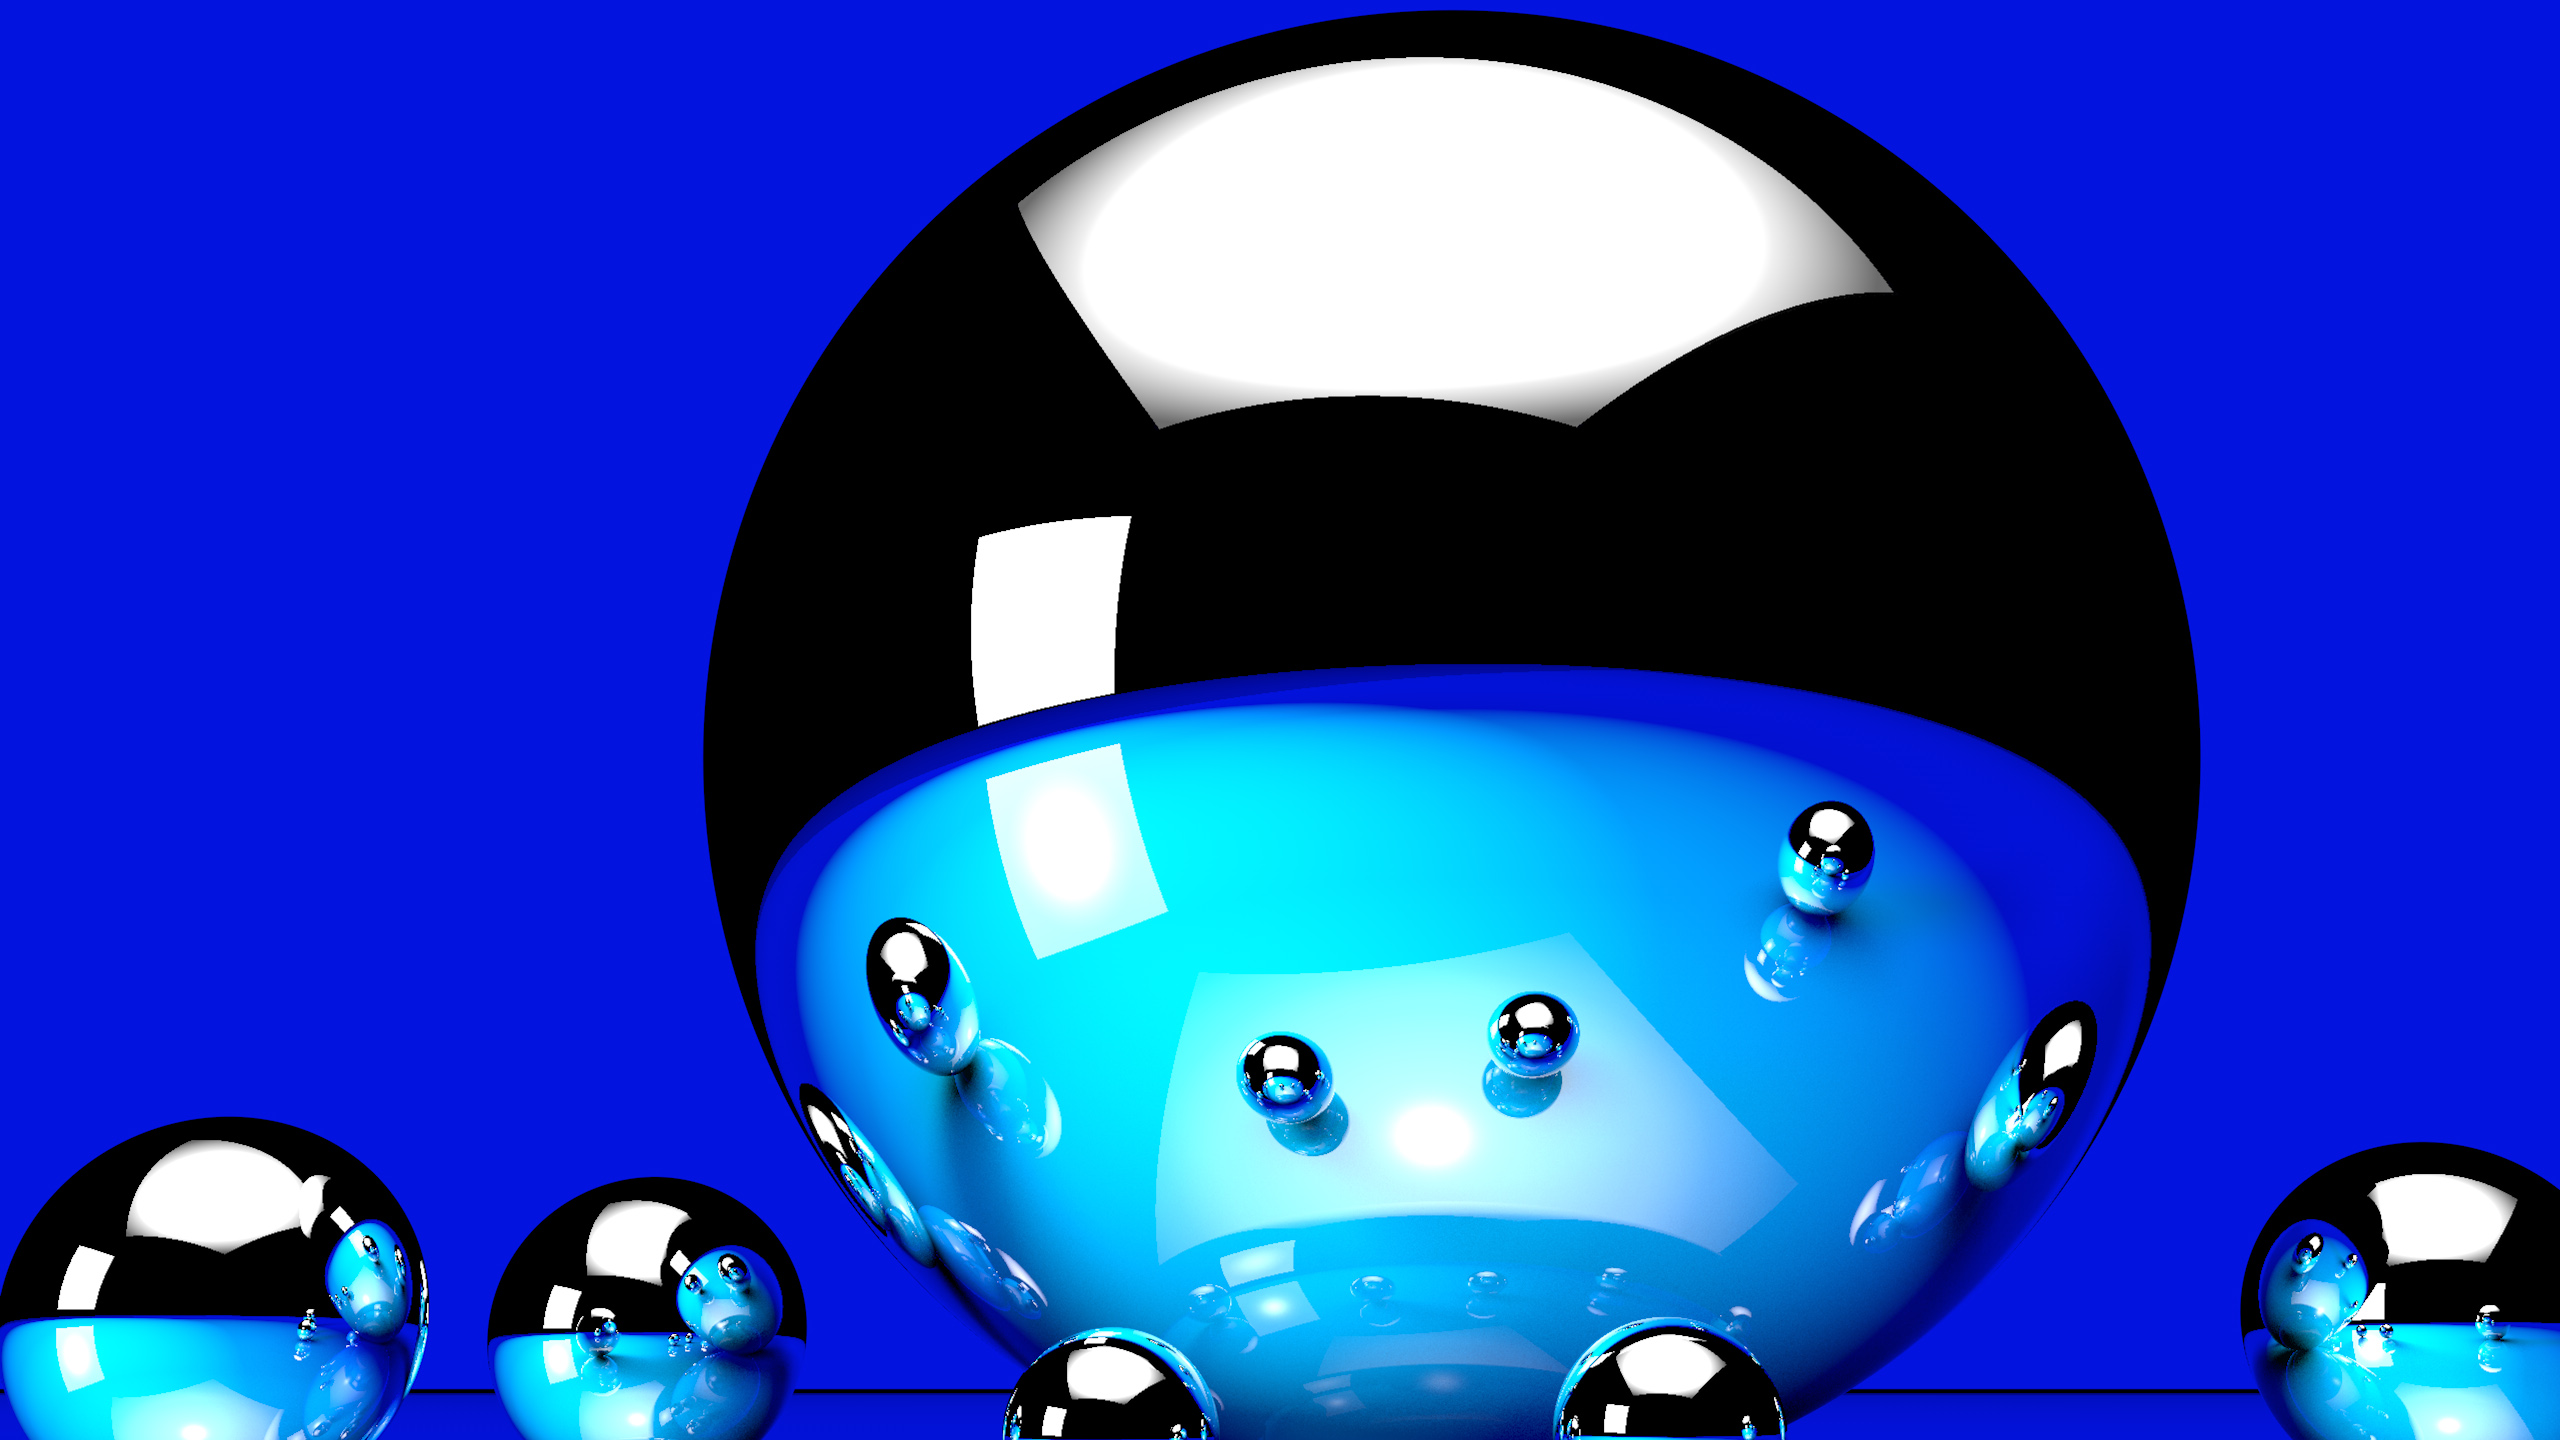 D Ball Blue Digital Art Reflection Sphere 2K Abstract